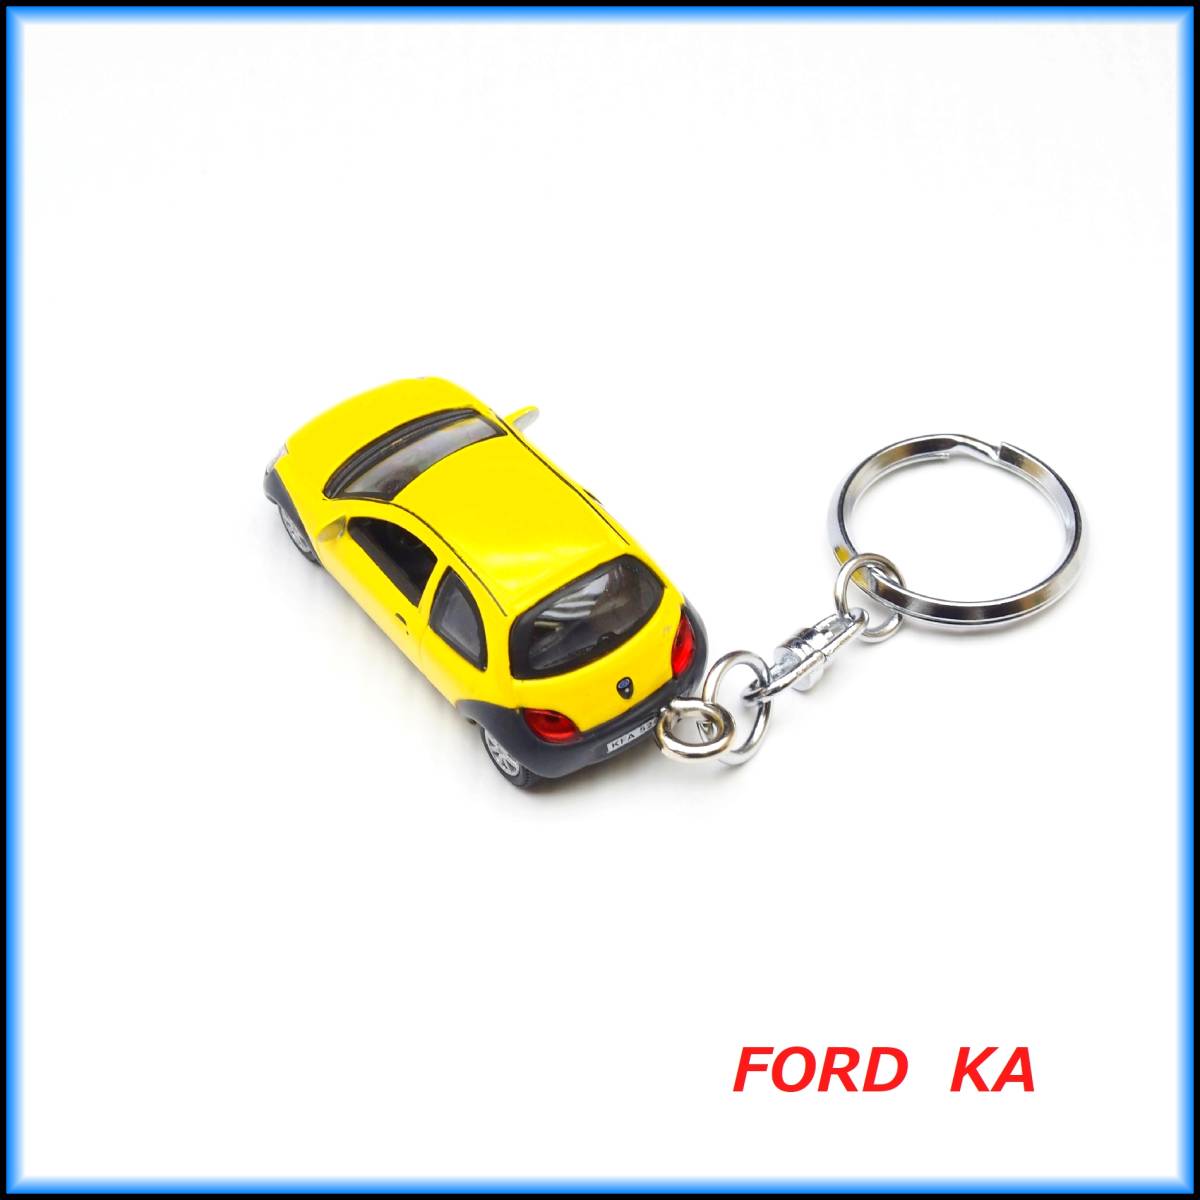 フォード FORD KA ミニカー ストラップ キーホルダー エアロ ホイール マフラー グリル ミラー ライト 車高調 バンパー シート ハンドル_画像5